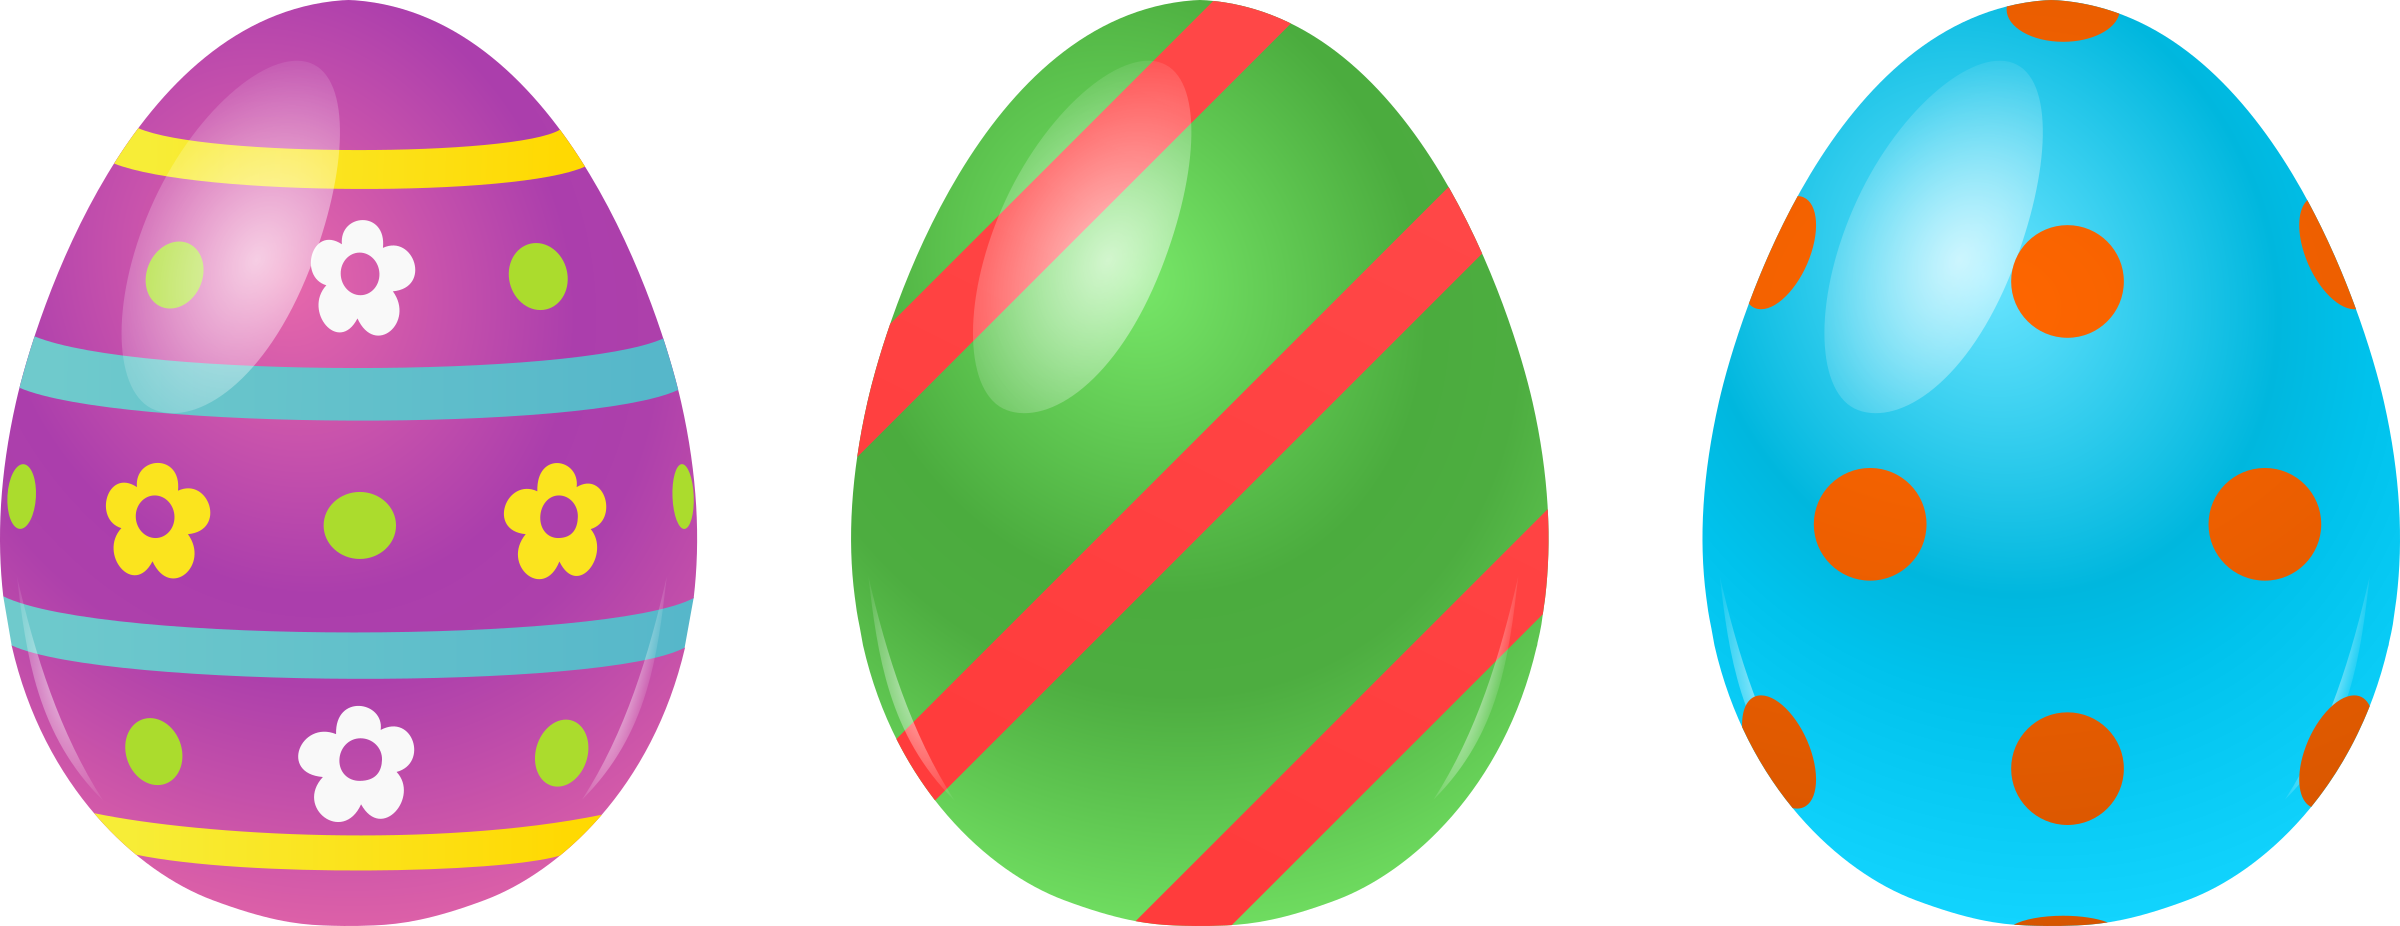 Makukulay na Easter Egg I-download ang PNG Image